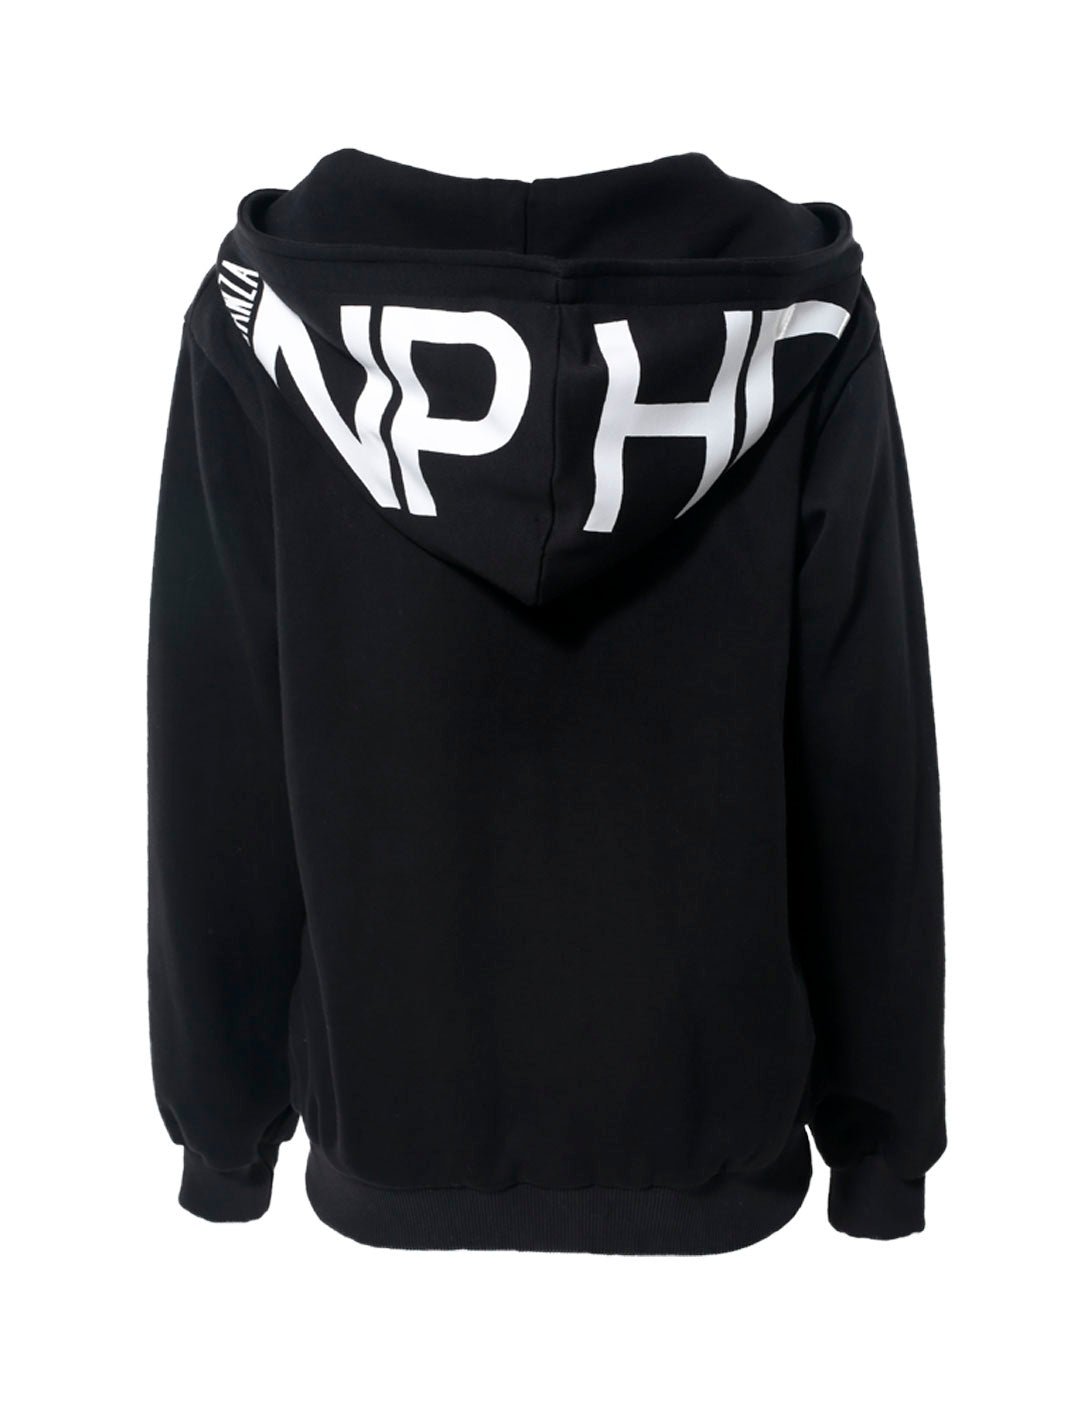 TUTA NPHD logo cappuccio black/black Personalizzabile - Non Posso, Ho Danza.